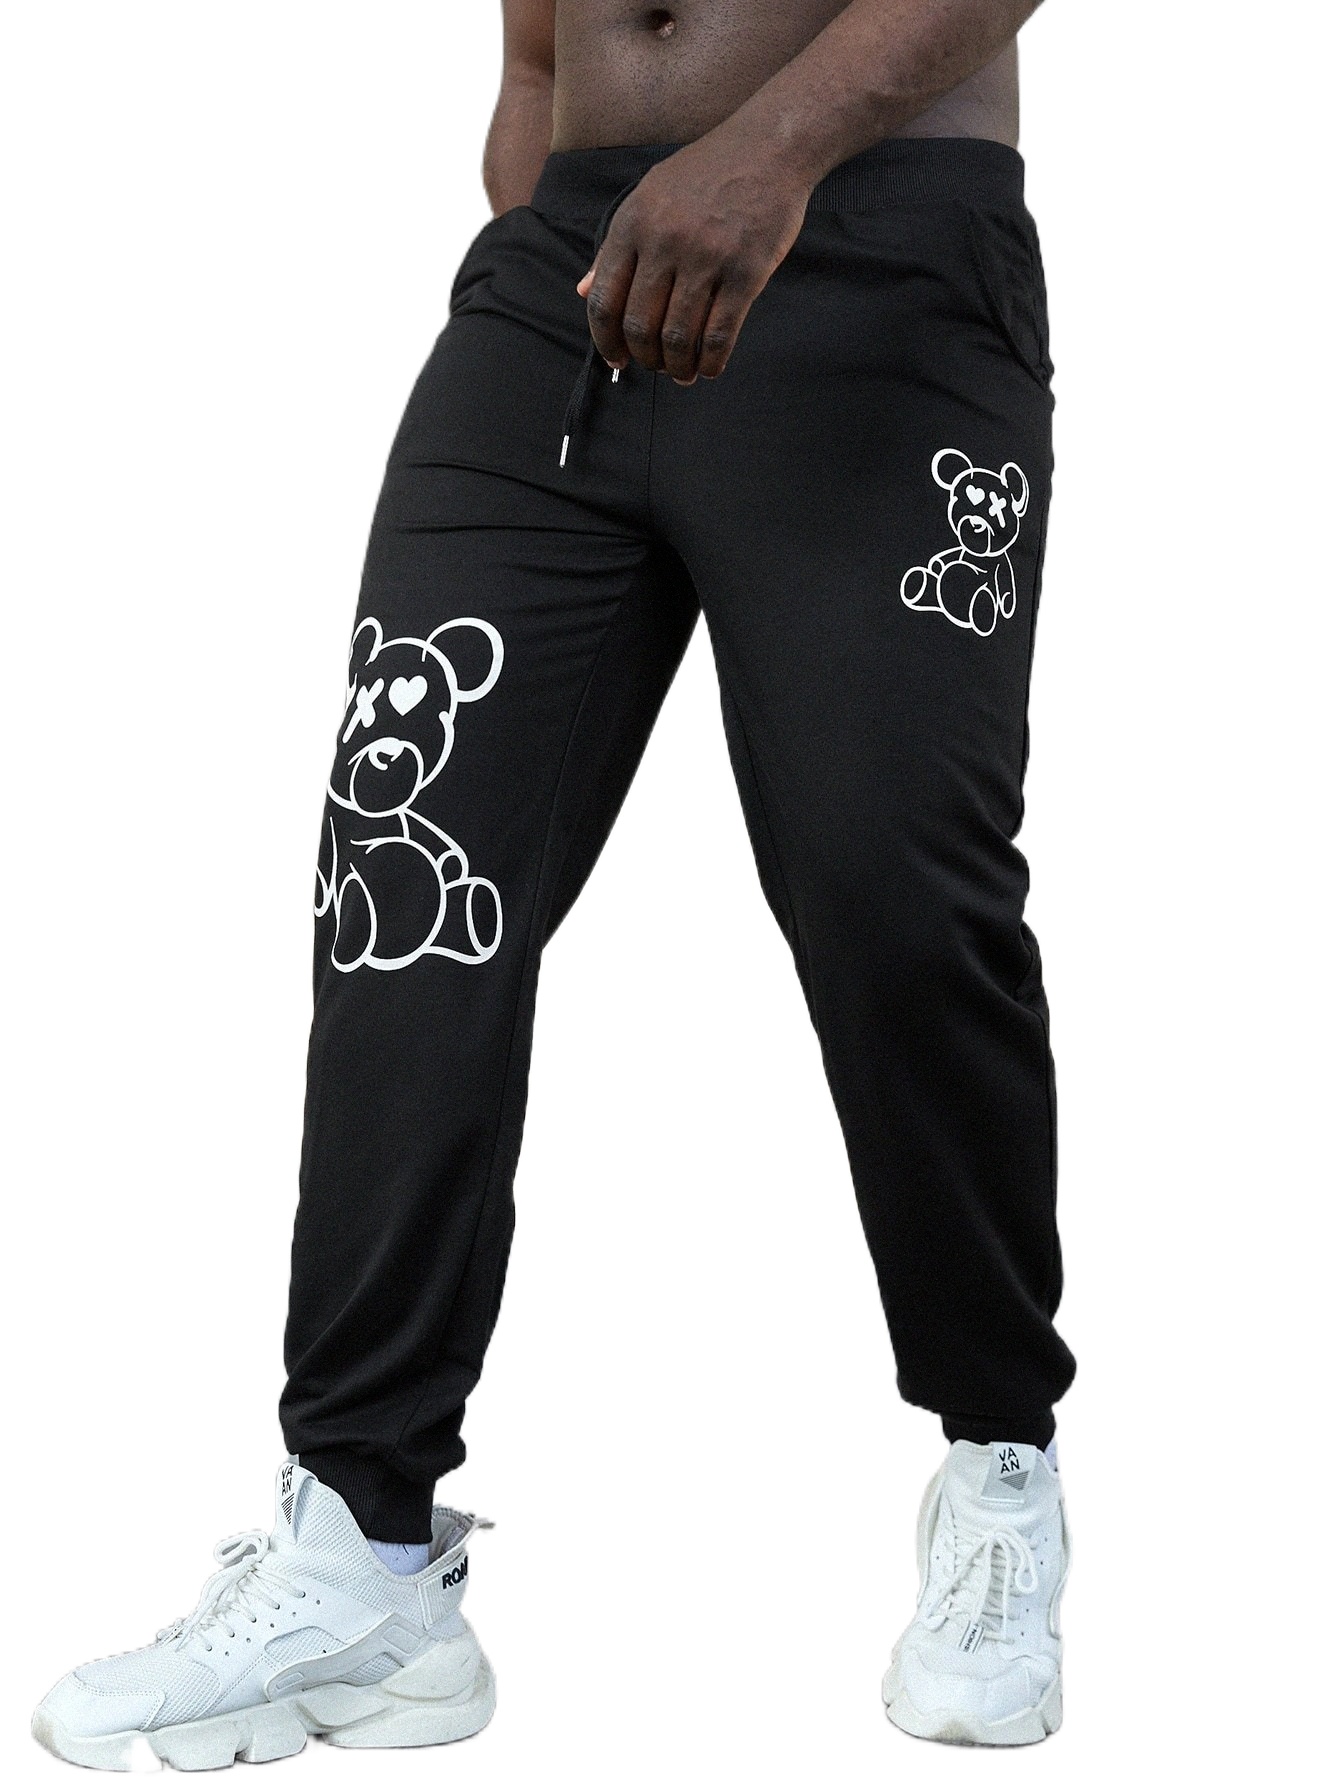 

extended Sizes Men Bear Print Drawstring Waist Sweatpants A9ix#, Black